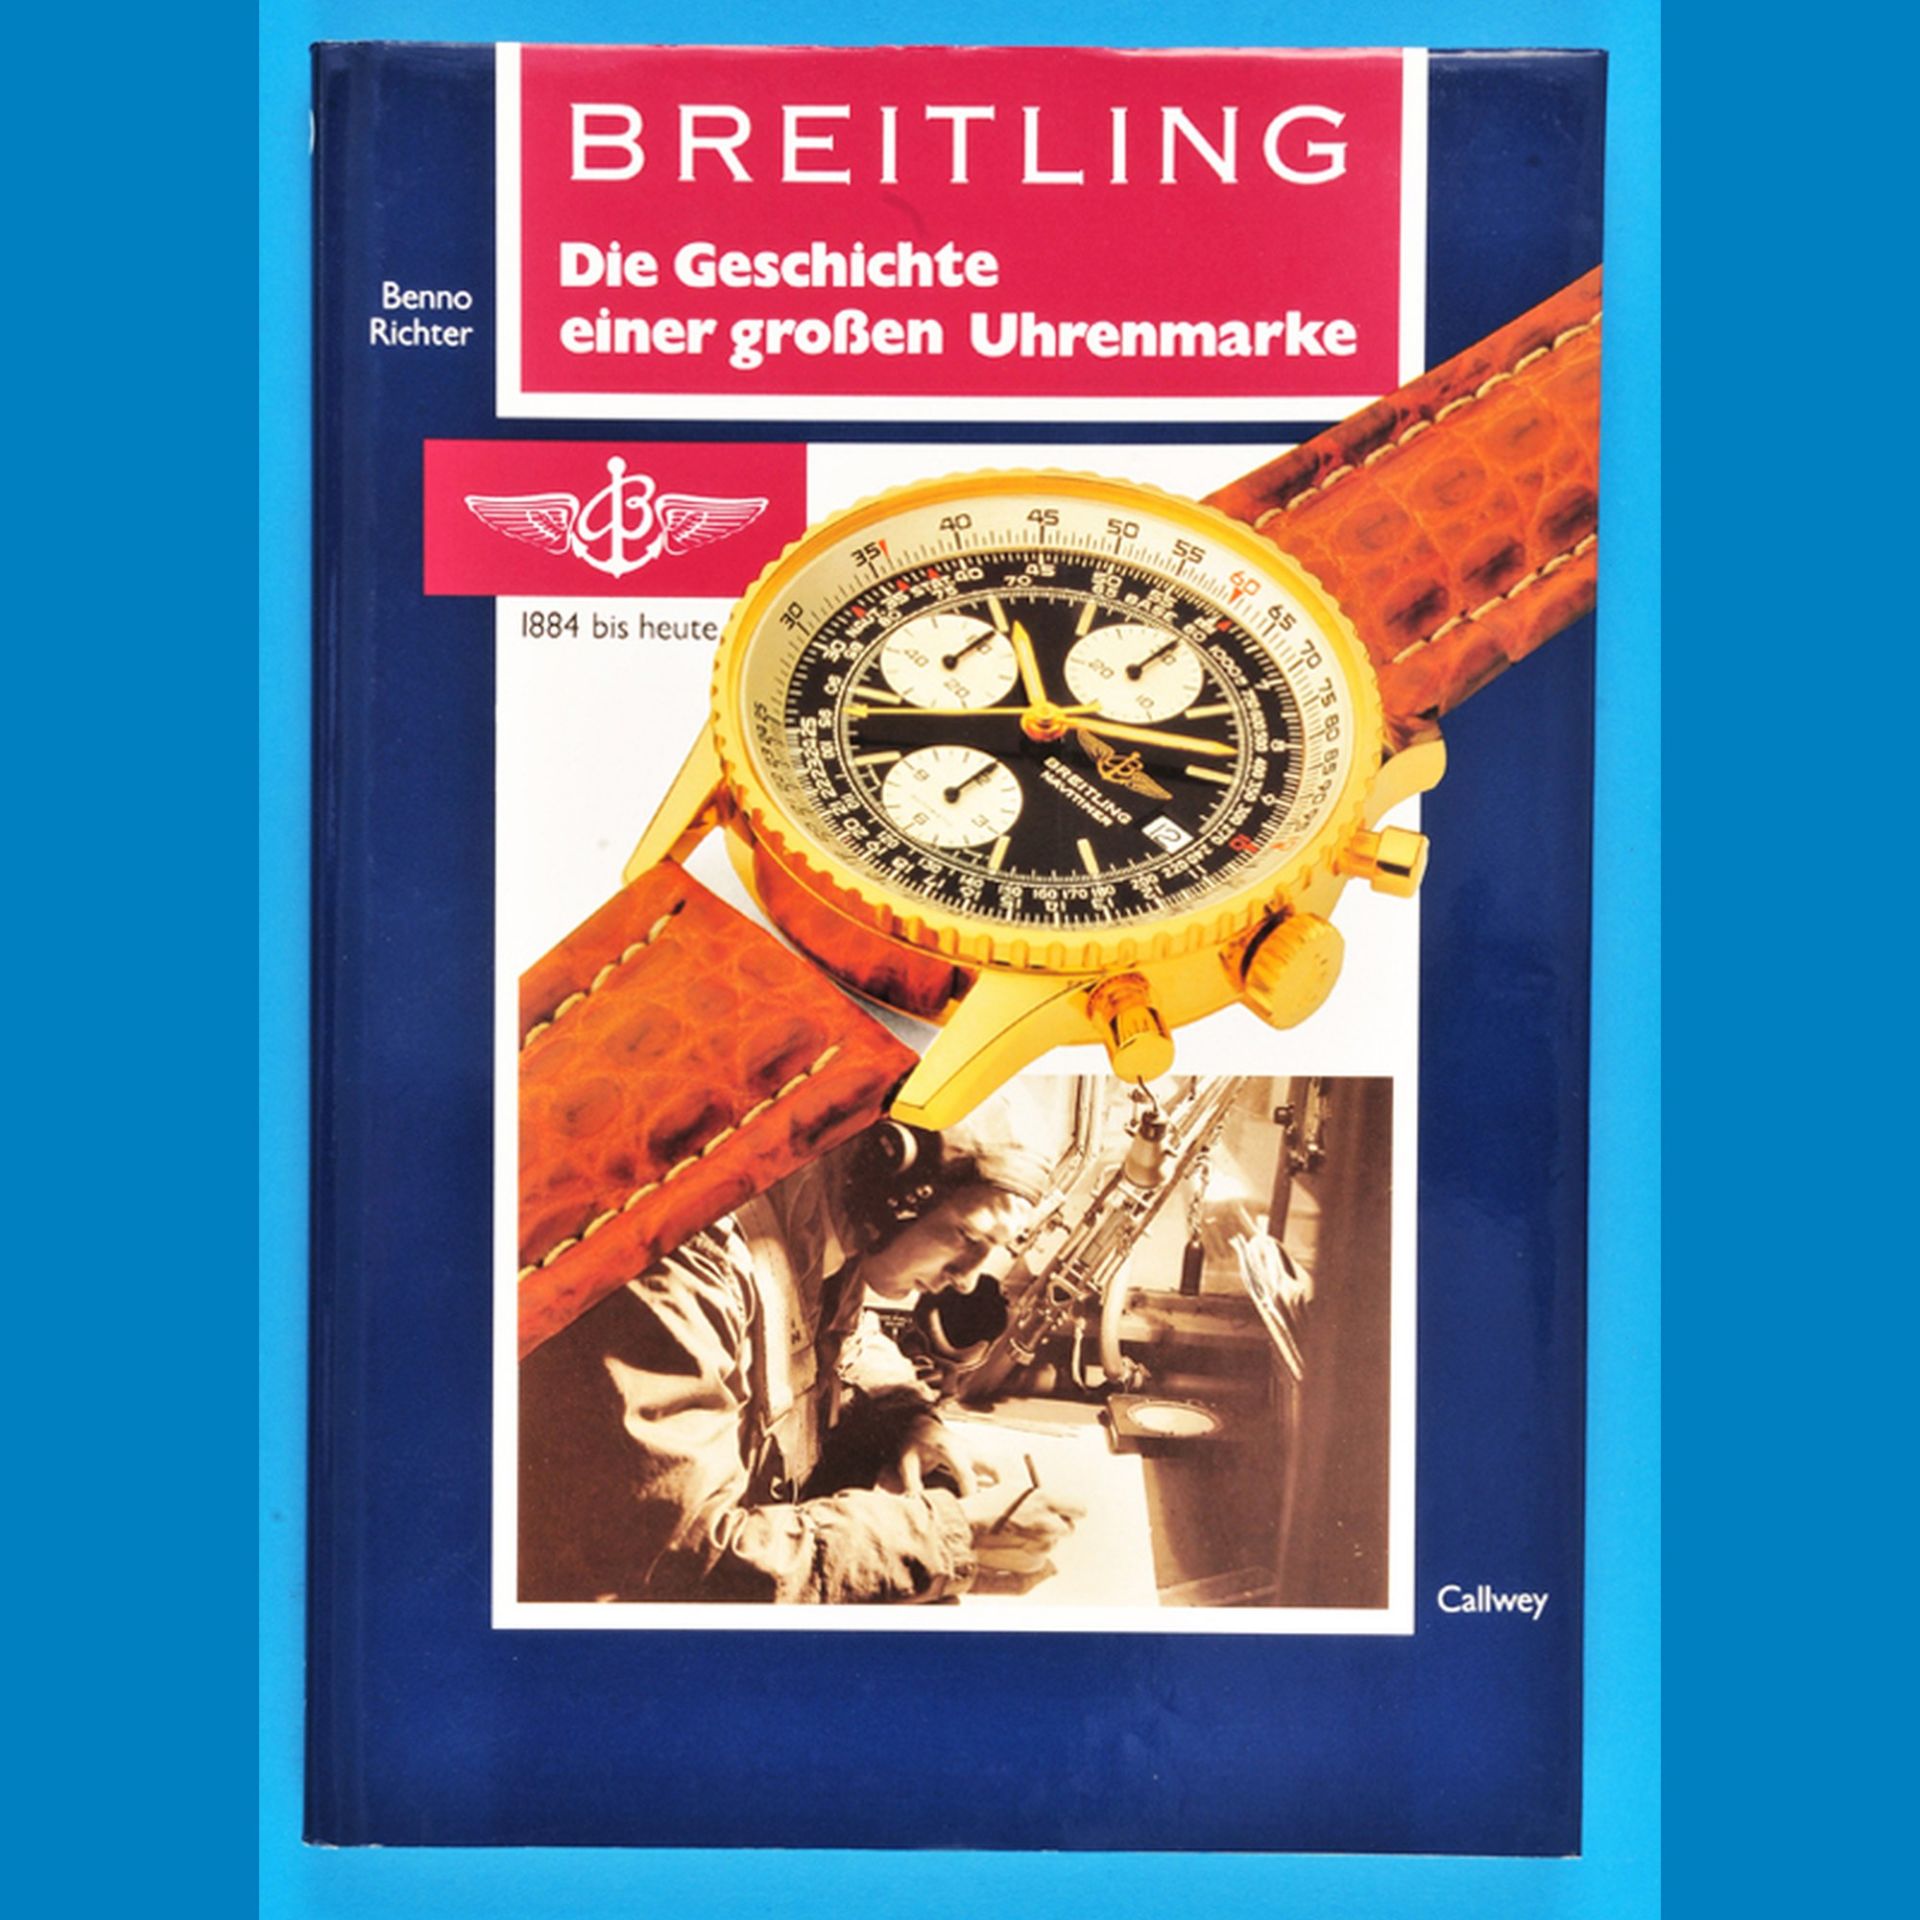 Benno Richter, Breitling – Die Geschichte einer großen Uhrenmarke